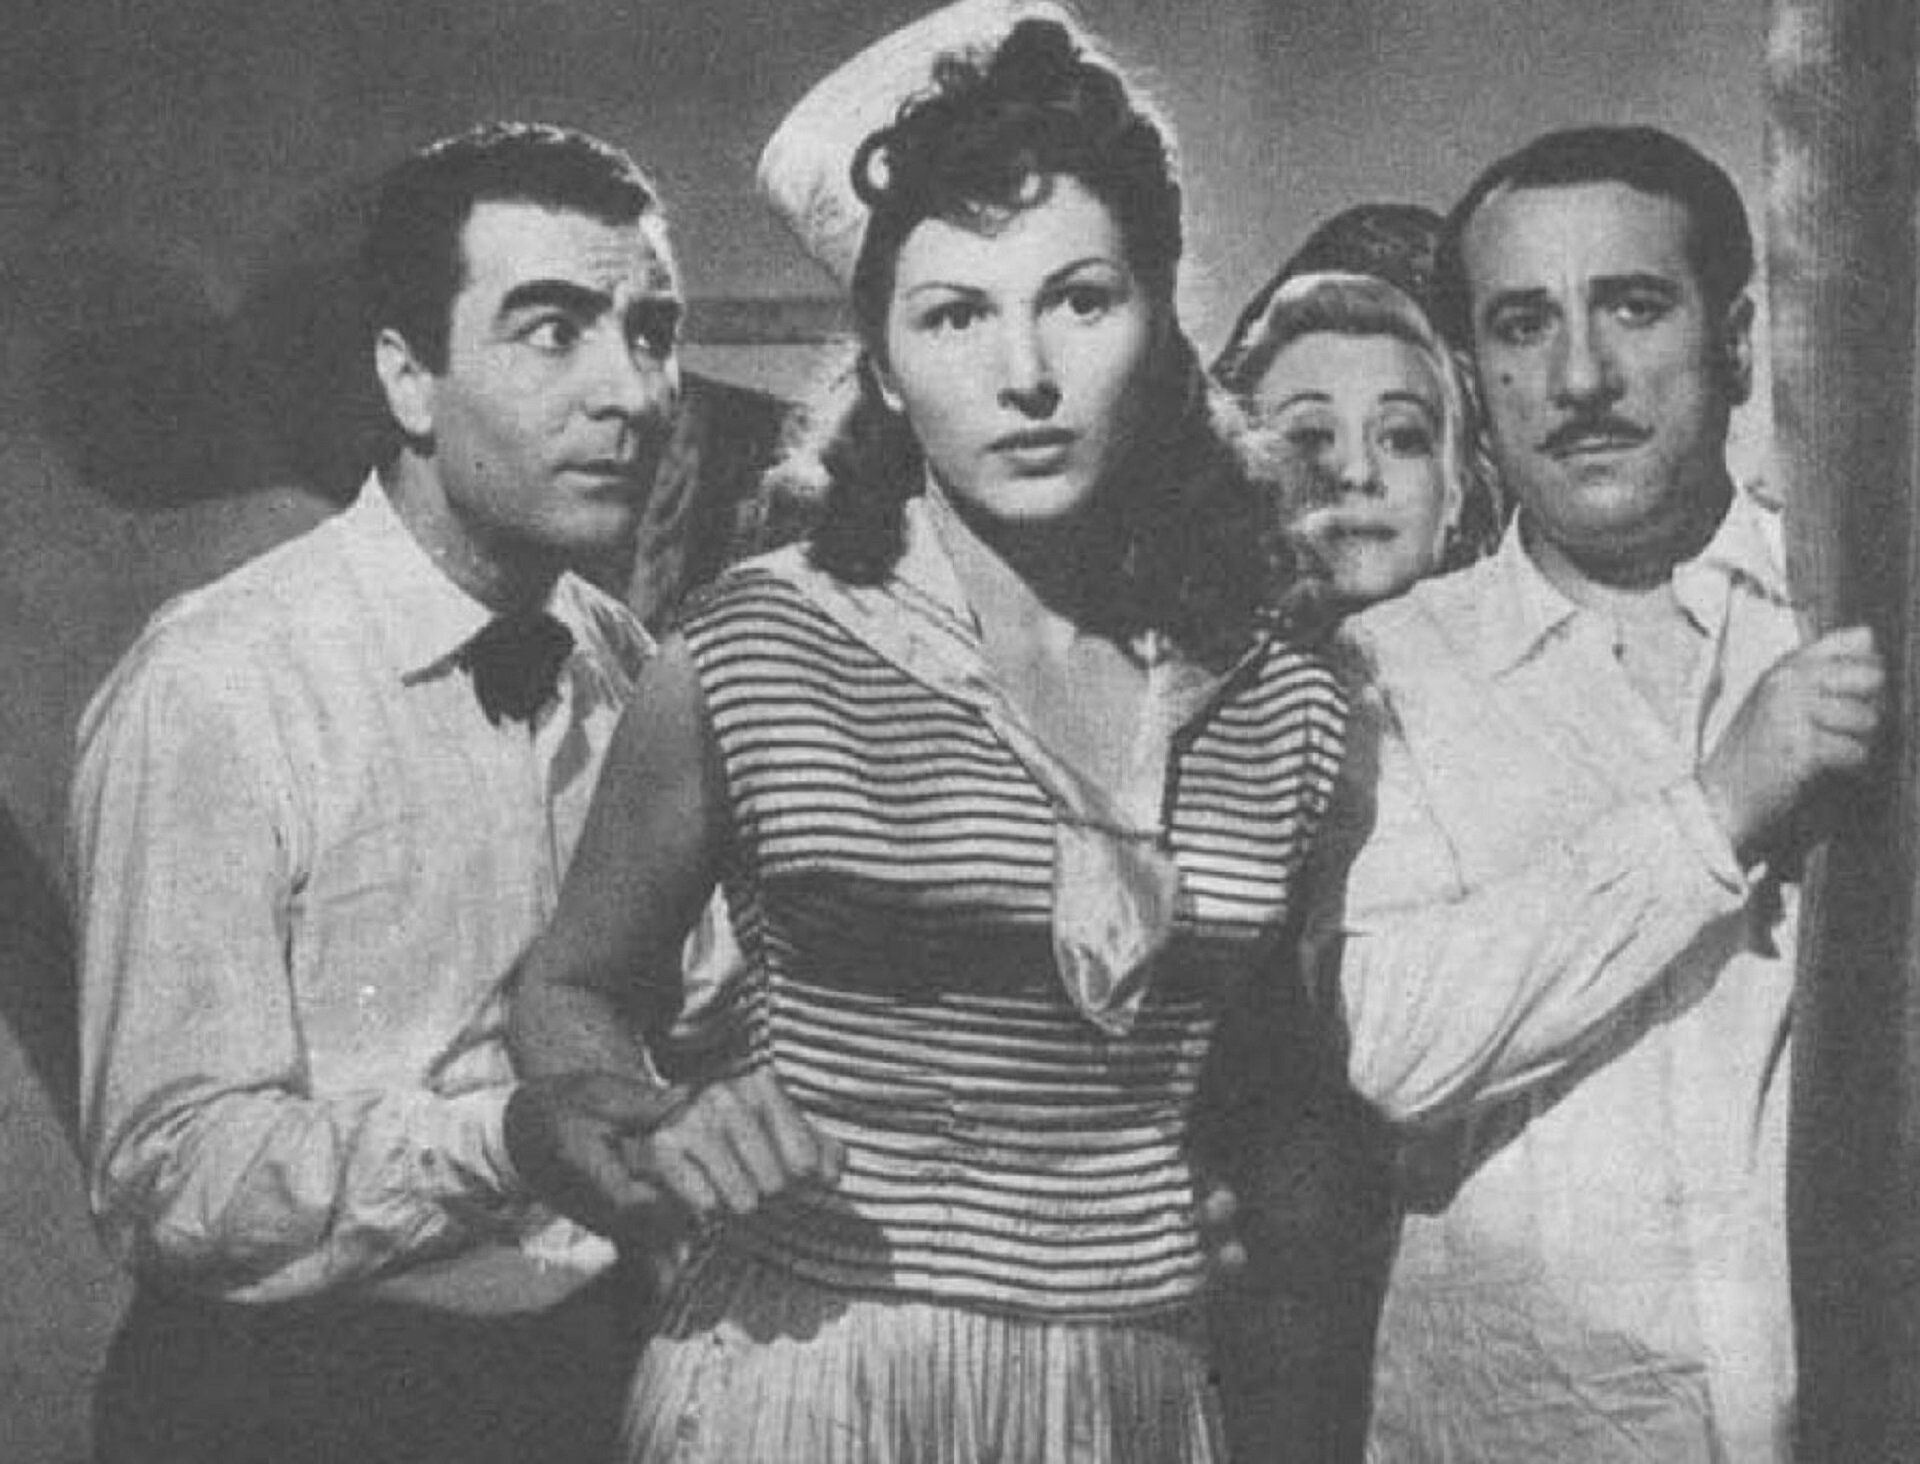 Zdjęcie przedstawia kadr z filmu "Światła variété" reżyser Federico Fellini. Cztery postacie, dwie kobiety i dwaj mężczyźni pokazani są od pasa w górę. Między dwoma mężczyznami stoi kobieta ubrana w marynarską bluzę, na głowie ma czapkę majtka. Po prawej stronie między kobietą a mężczyzną widać twarz innej kobiety.